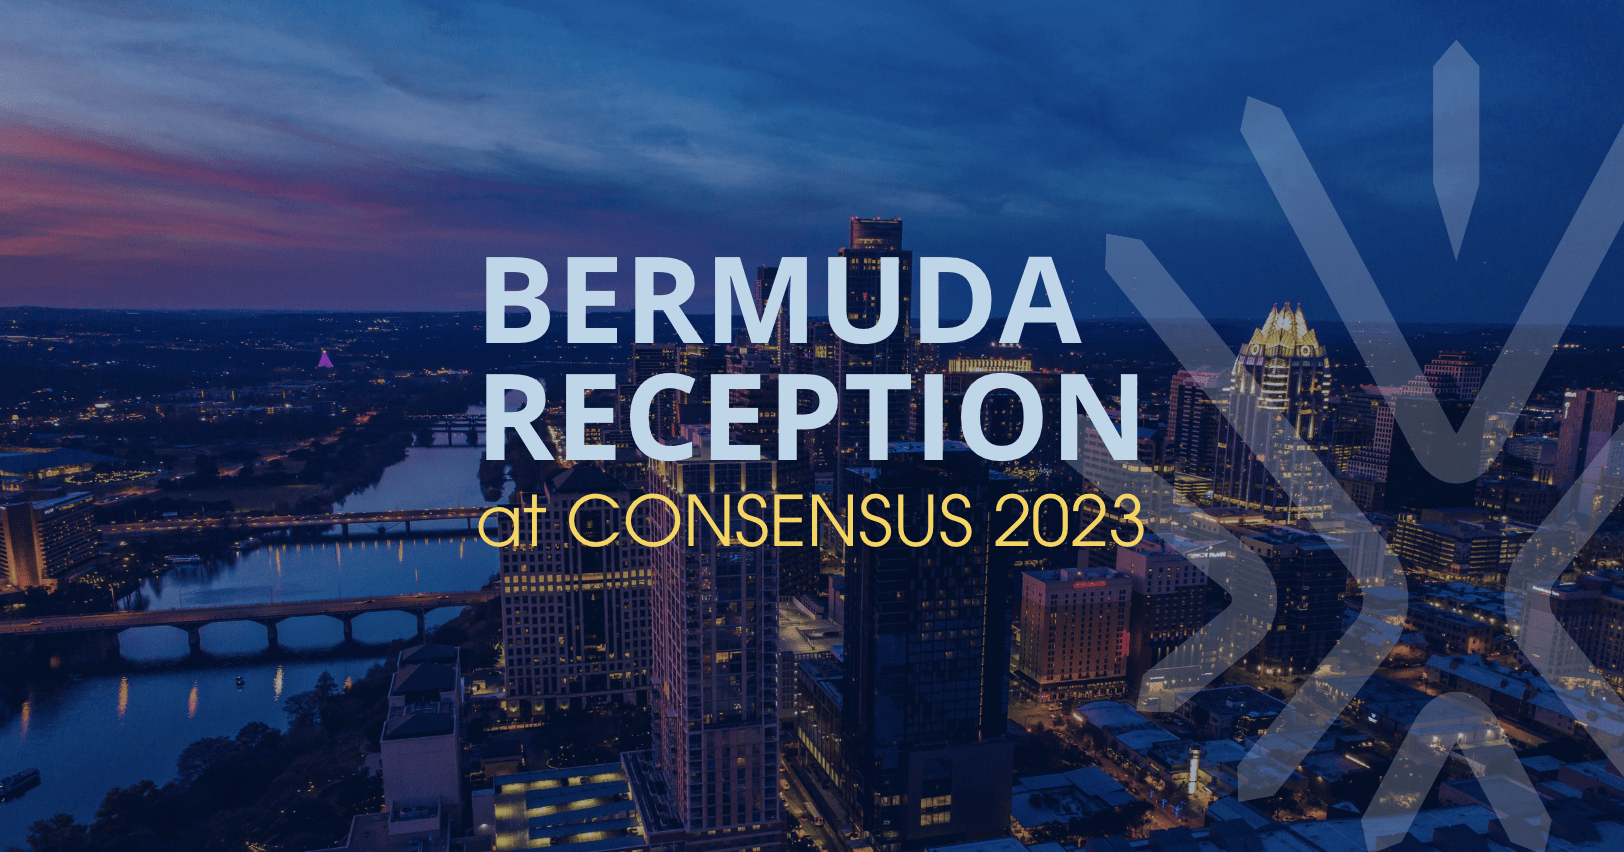 Bermuda’s Premier Leads Delegation to Consensus 2023